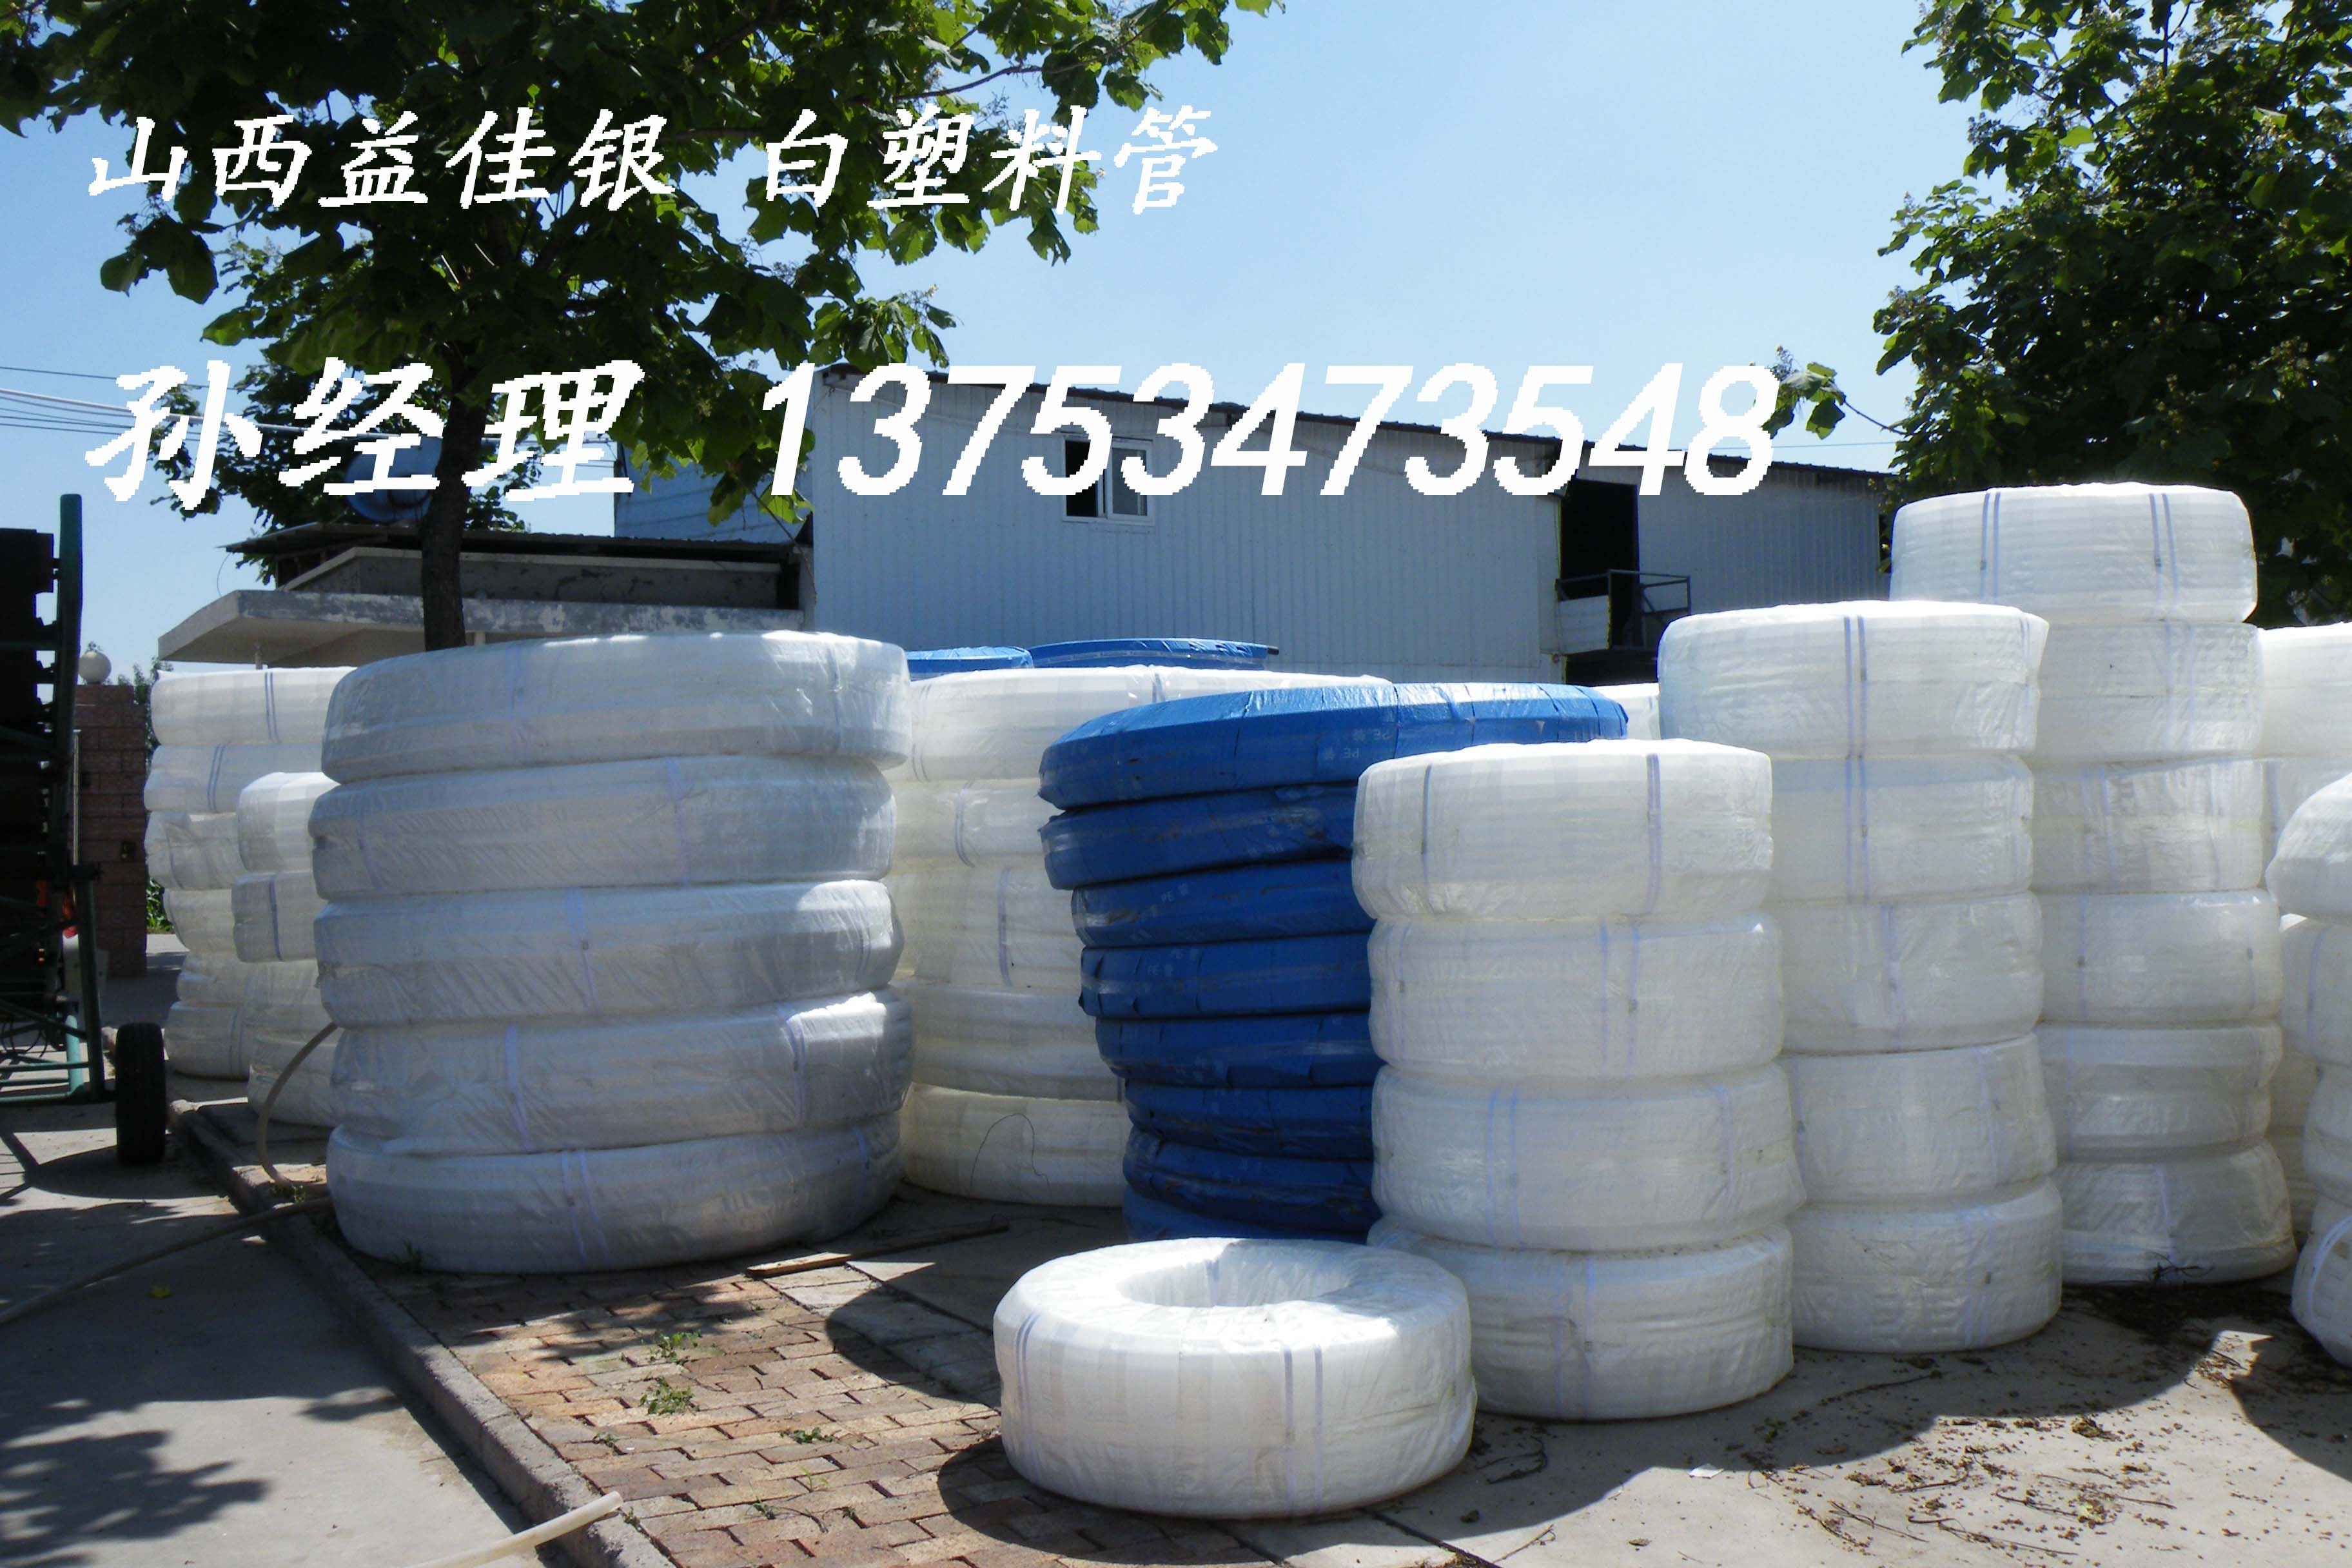 山西pe白塑料管厂家供应,太原优质白塑料自来水管,灌溉管低价批发